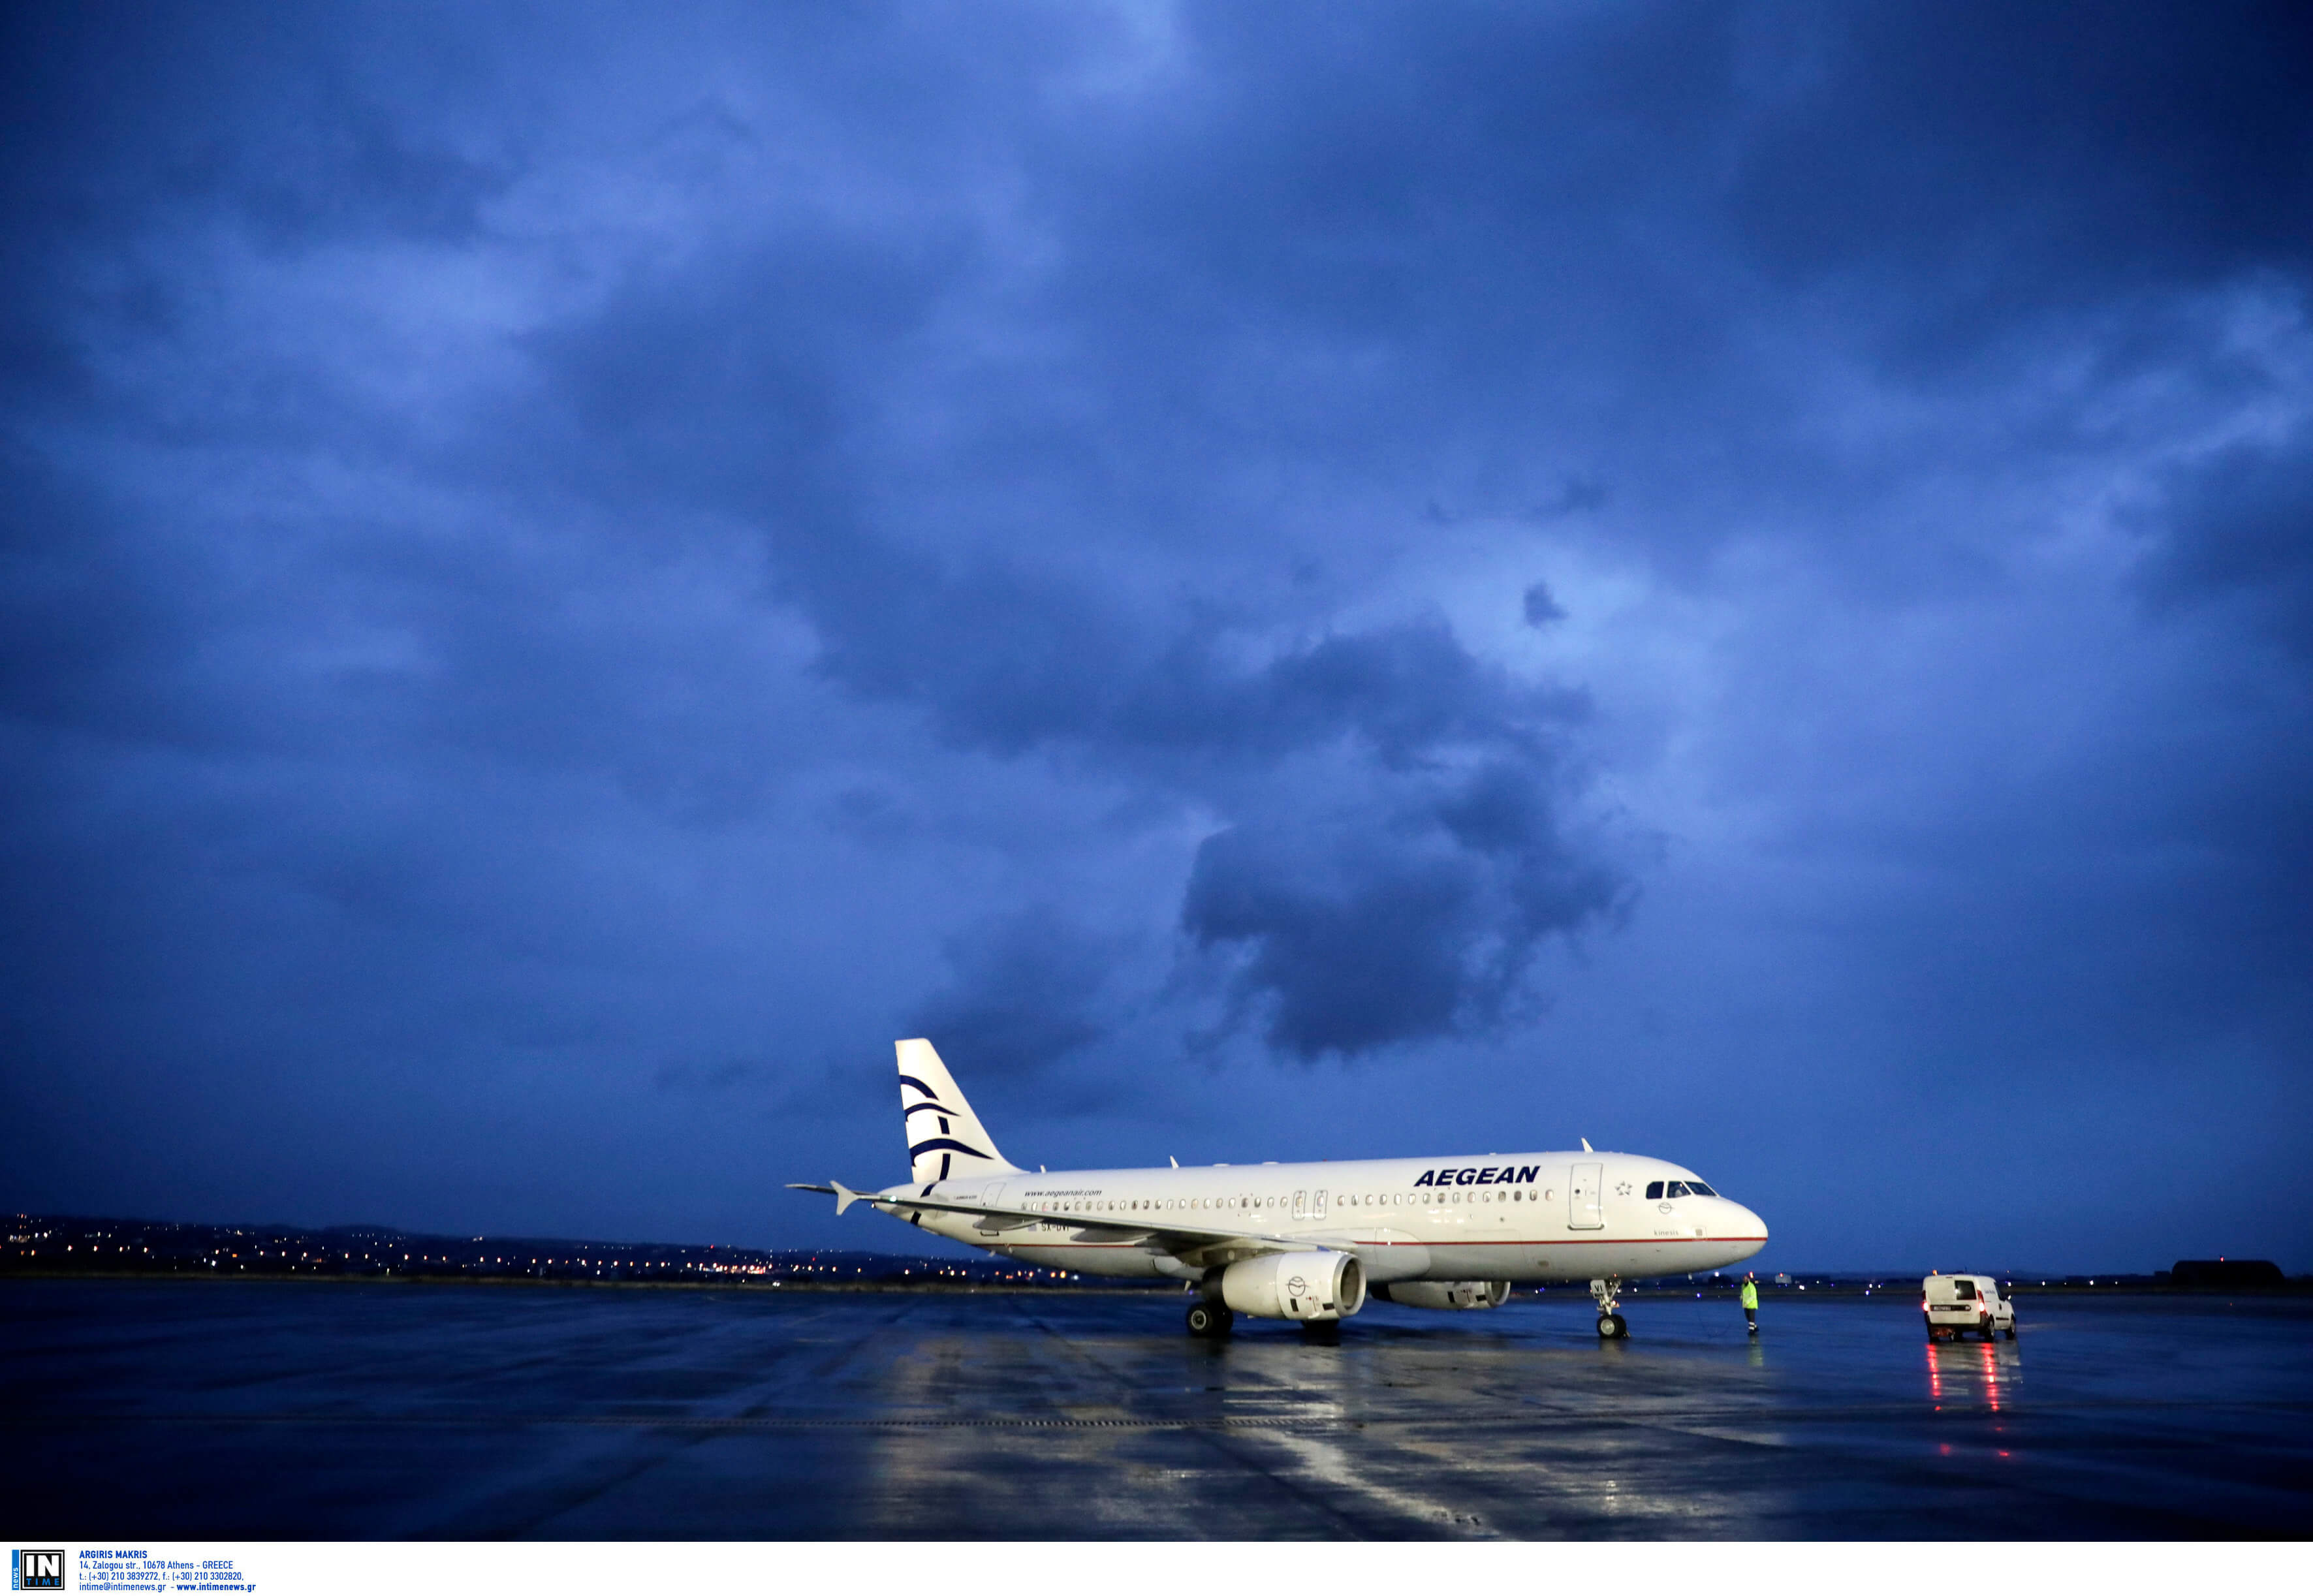 Θεσσαλονίκη: Πέρασε η χαμηλή νέφωση – Κανονικά οι πτήσεις